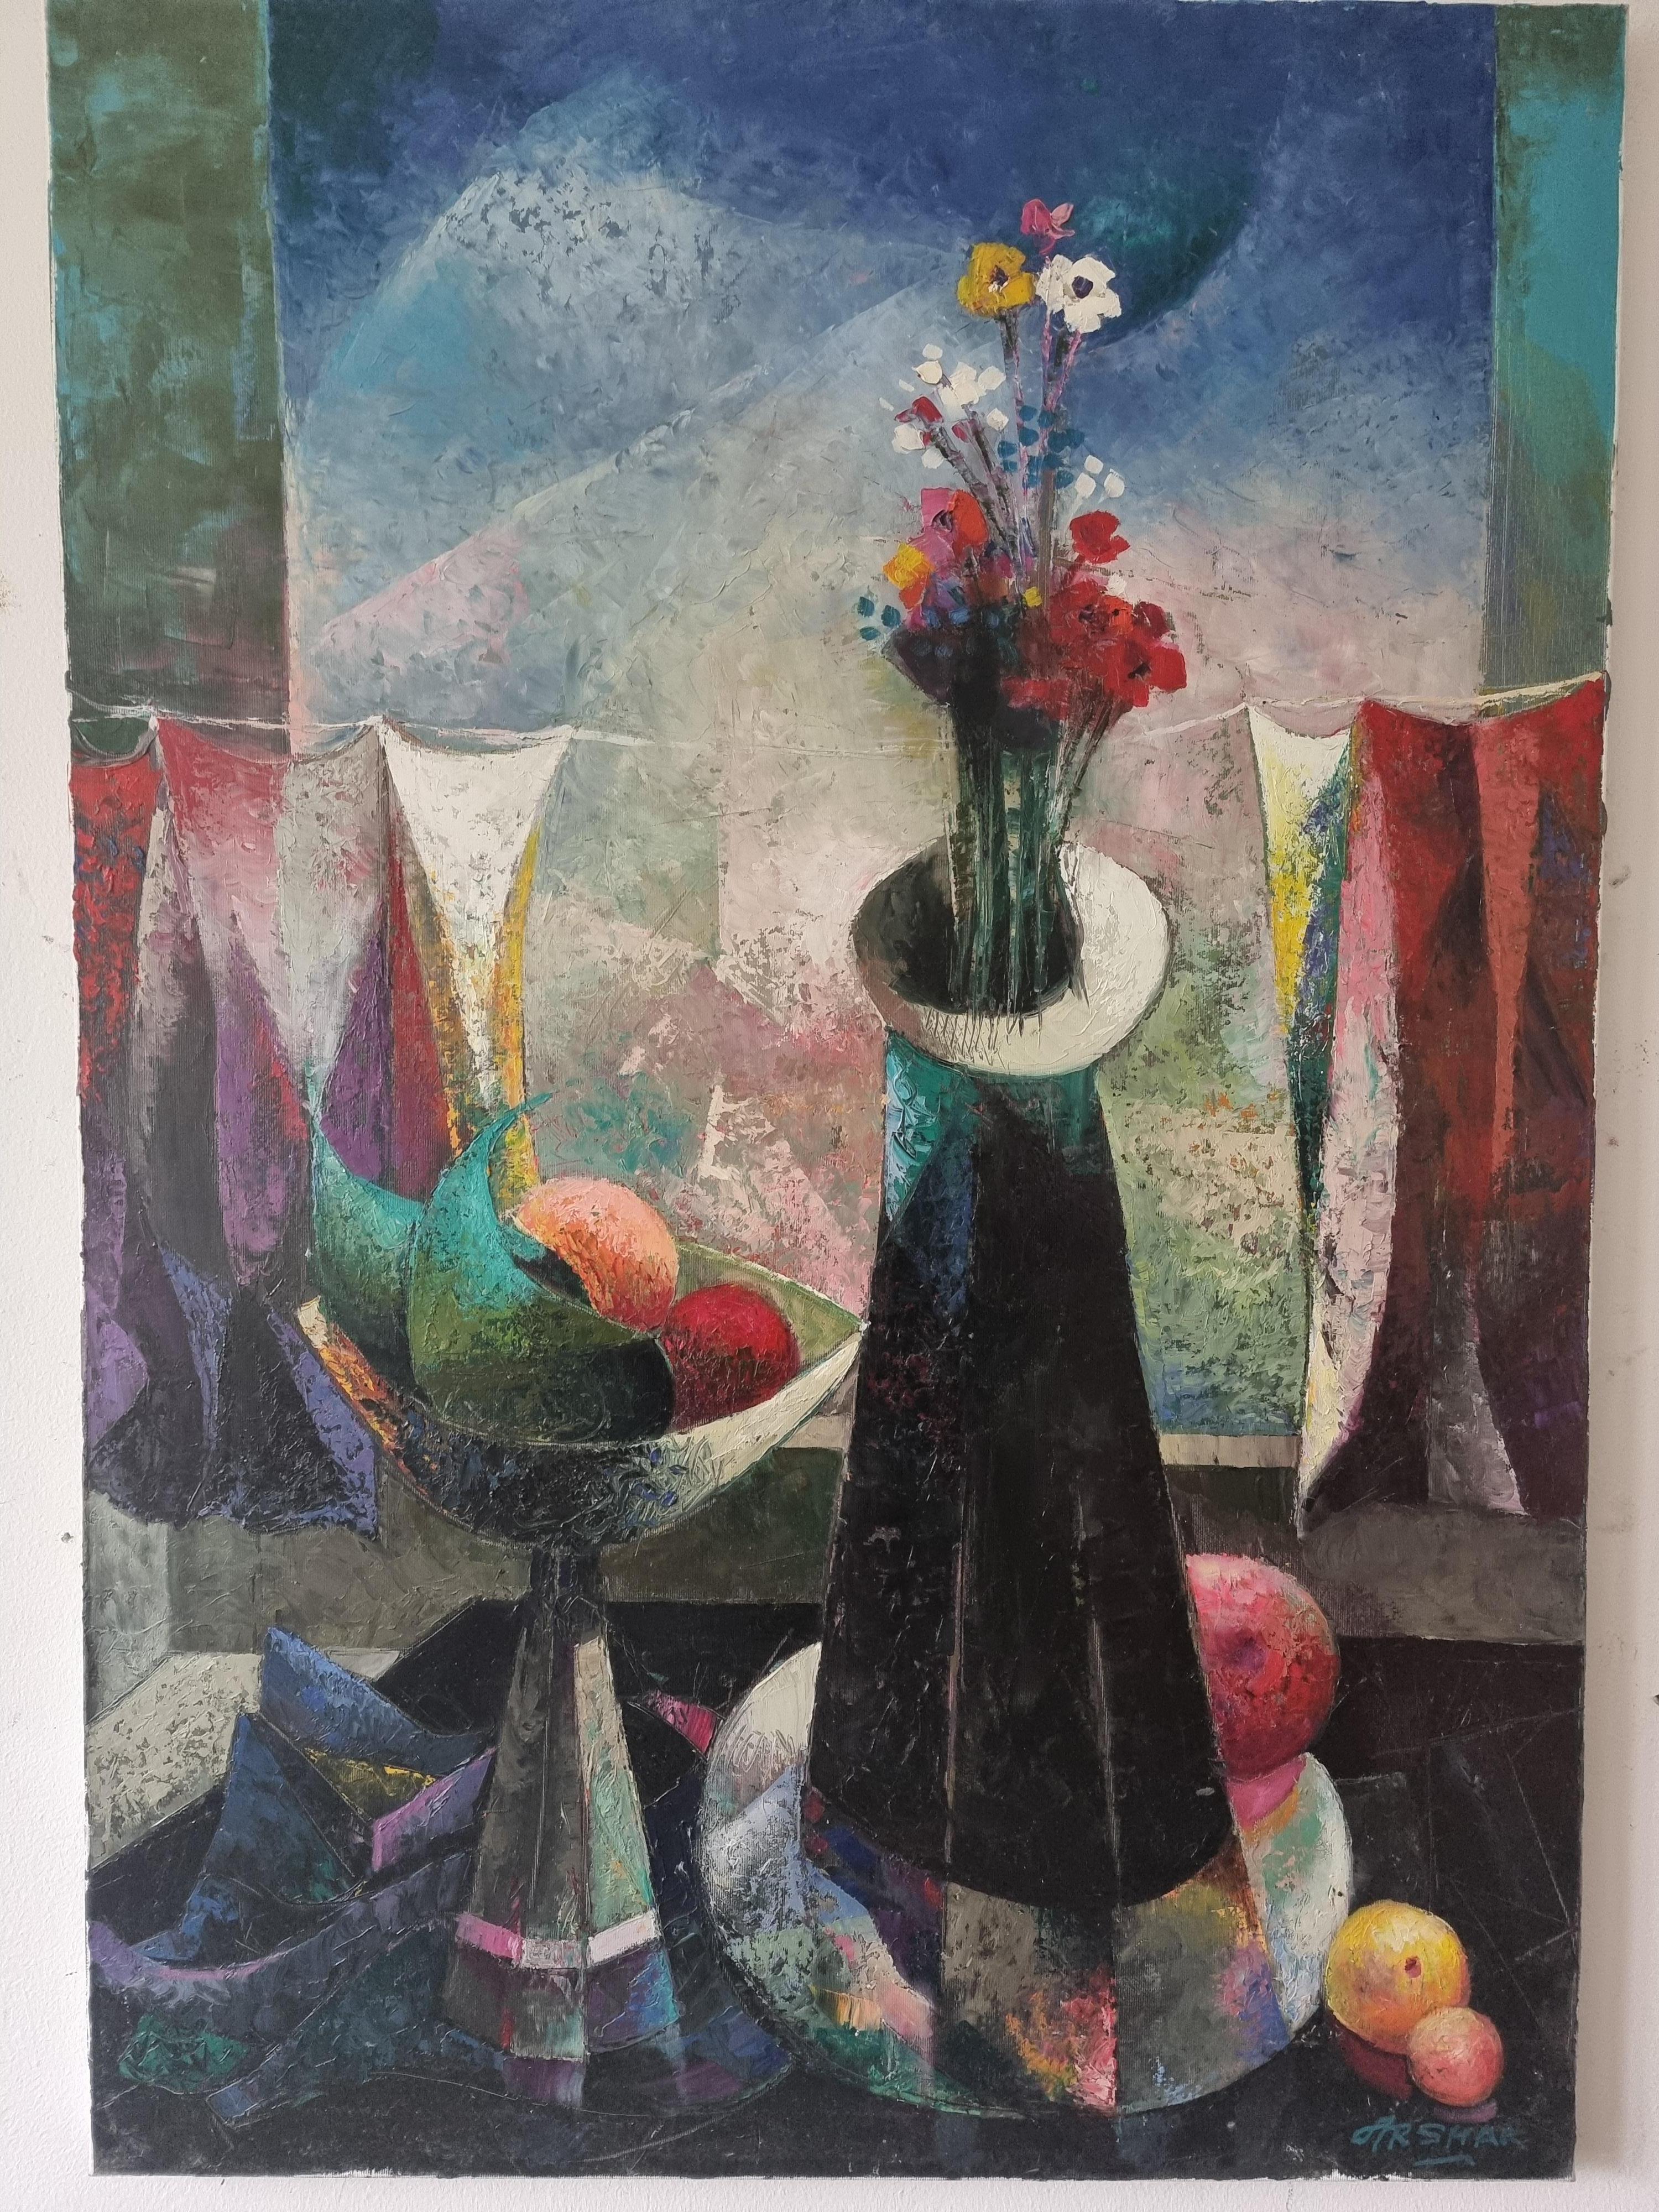  Abstrakter Kubismus-Stillleben in Rot, Schwarz, Gelb, Weiß, Grün, Blau und Lila, Orange – Painting von Arshak Nersisyan